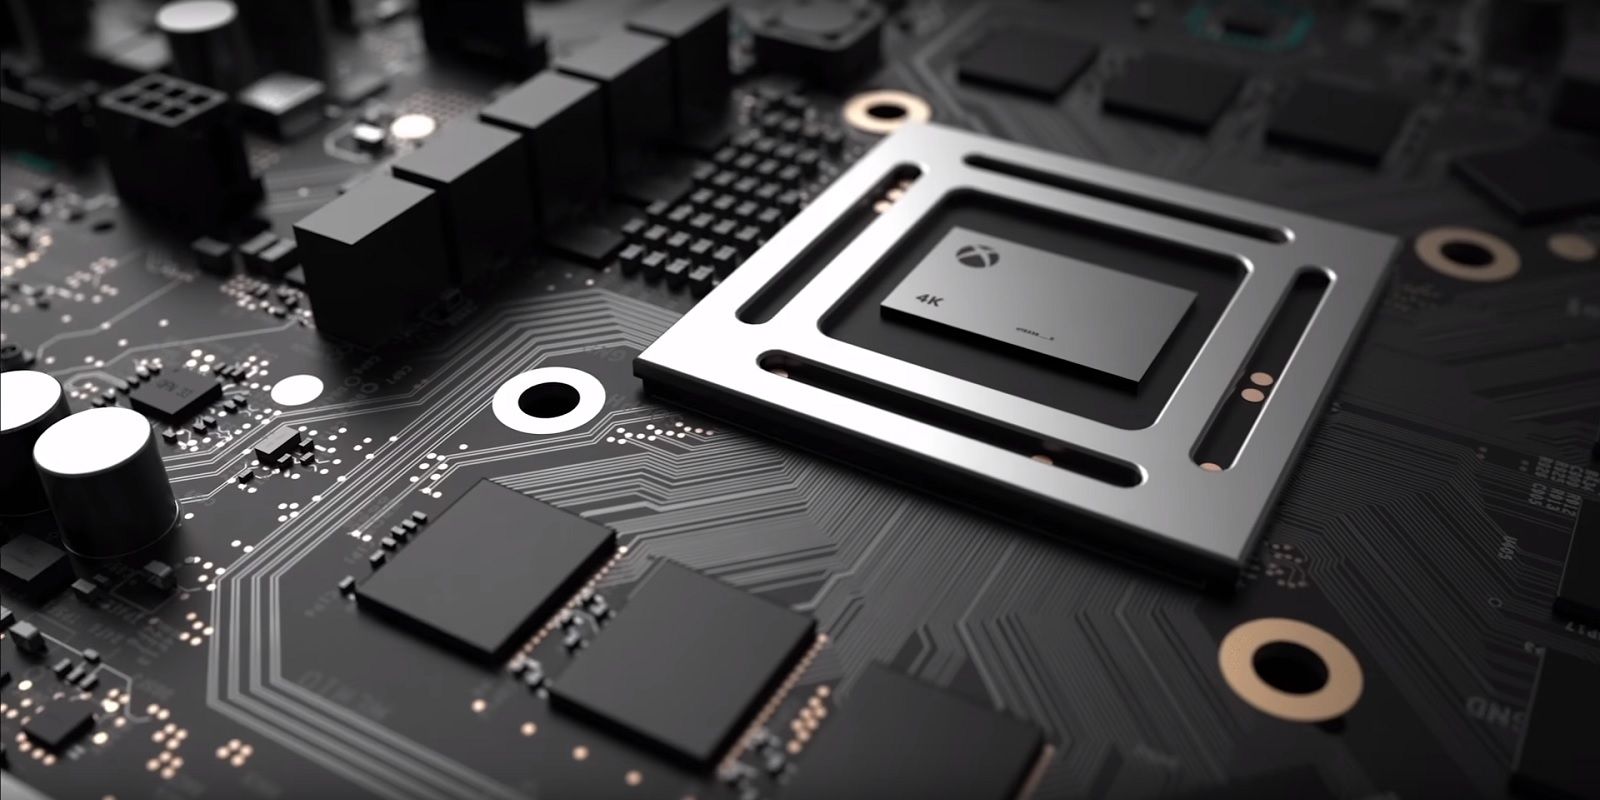 Project Scorpio: Microsoft раскрыла технические характеристики игровой консоли следующего поколения - 1